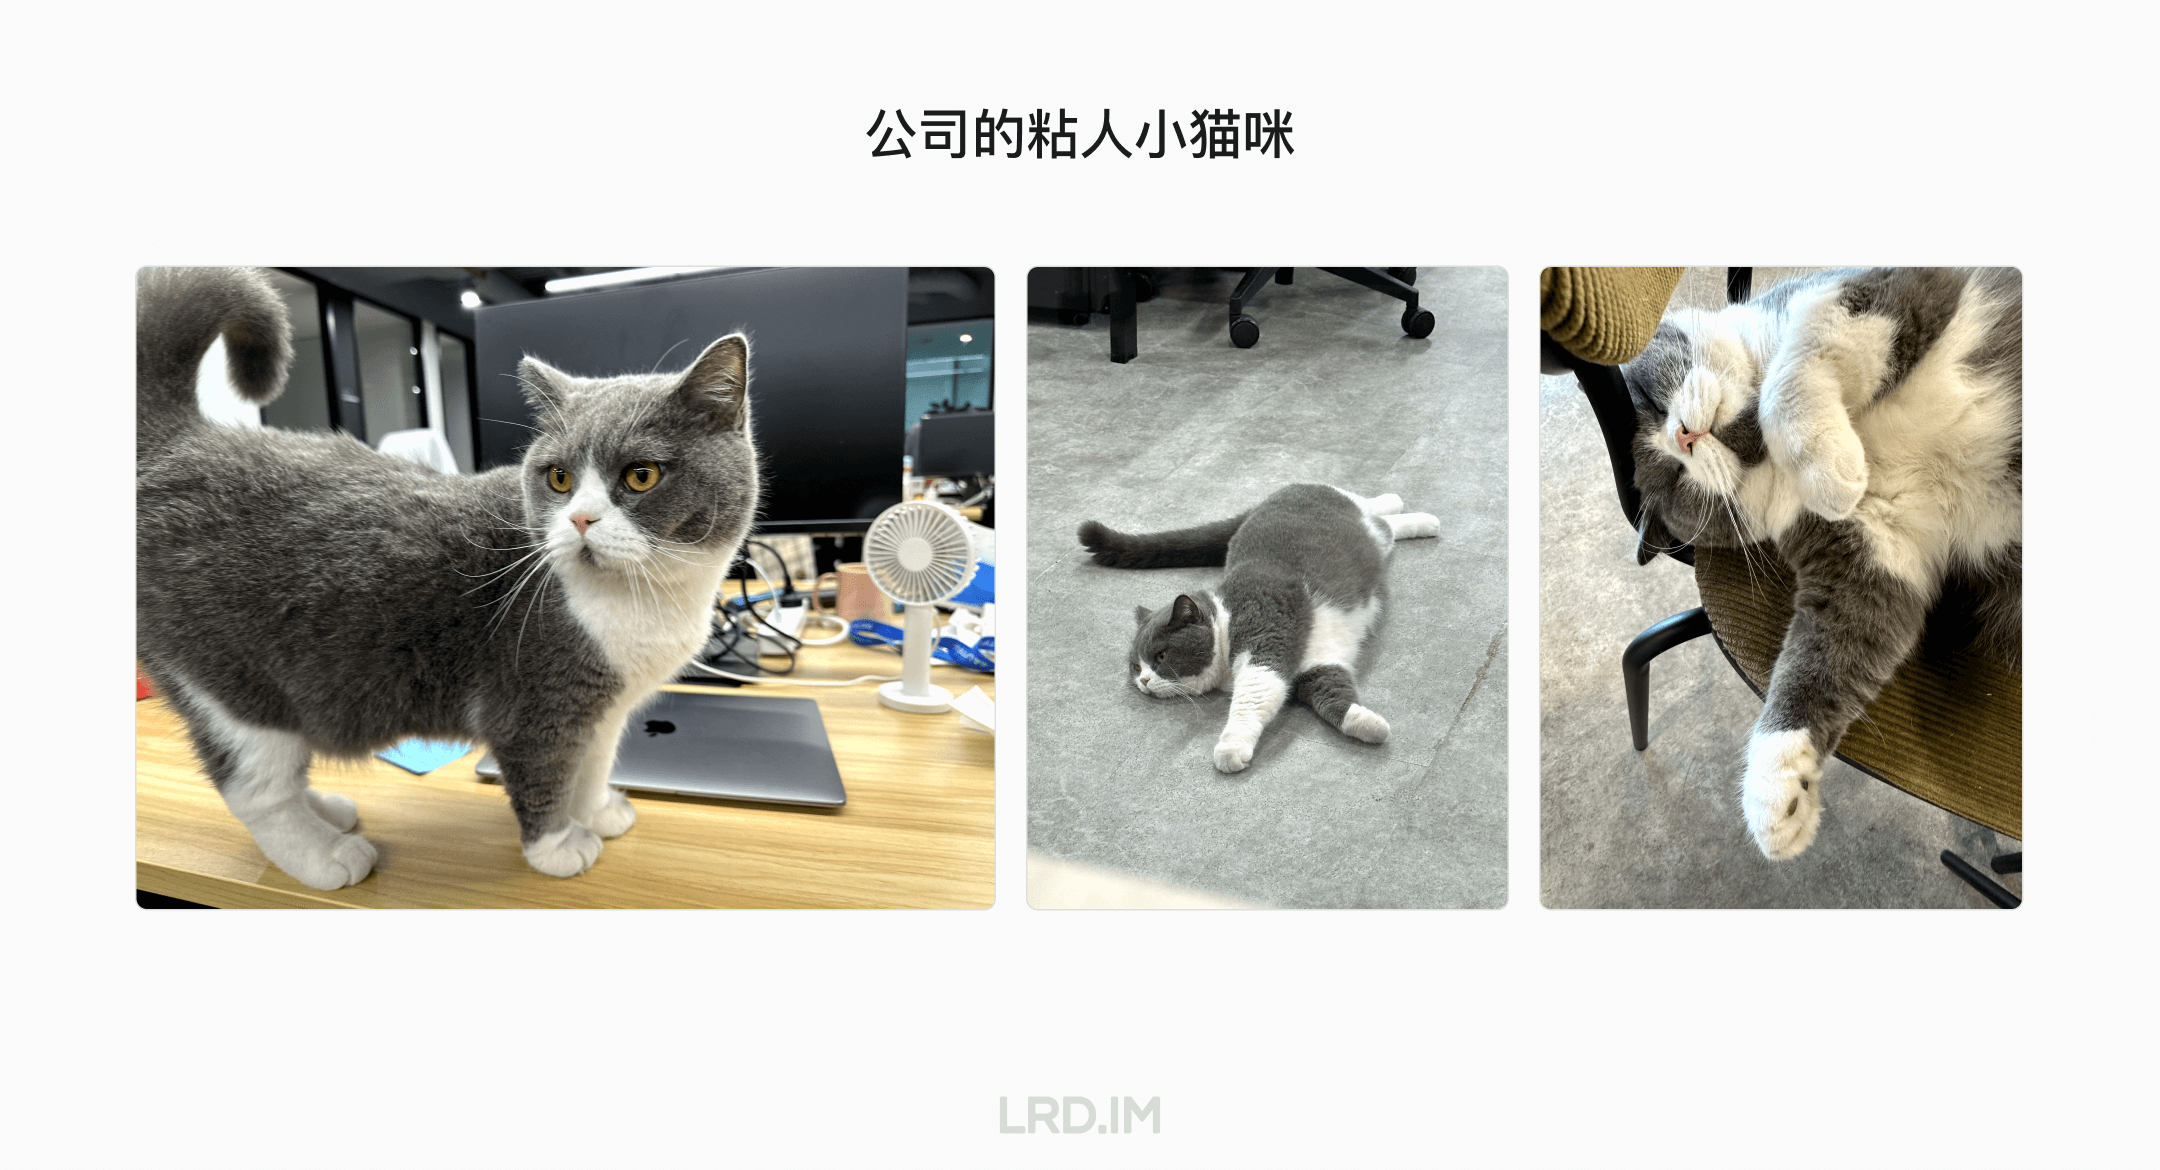 公司的灰白色猫咪在办公室的三个不同场景中：一张图中猫咪站在桌子上，一张图中它平躺在地上，最后一张图中它在椅子上仰面躺着。